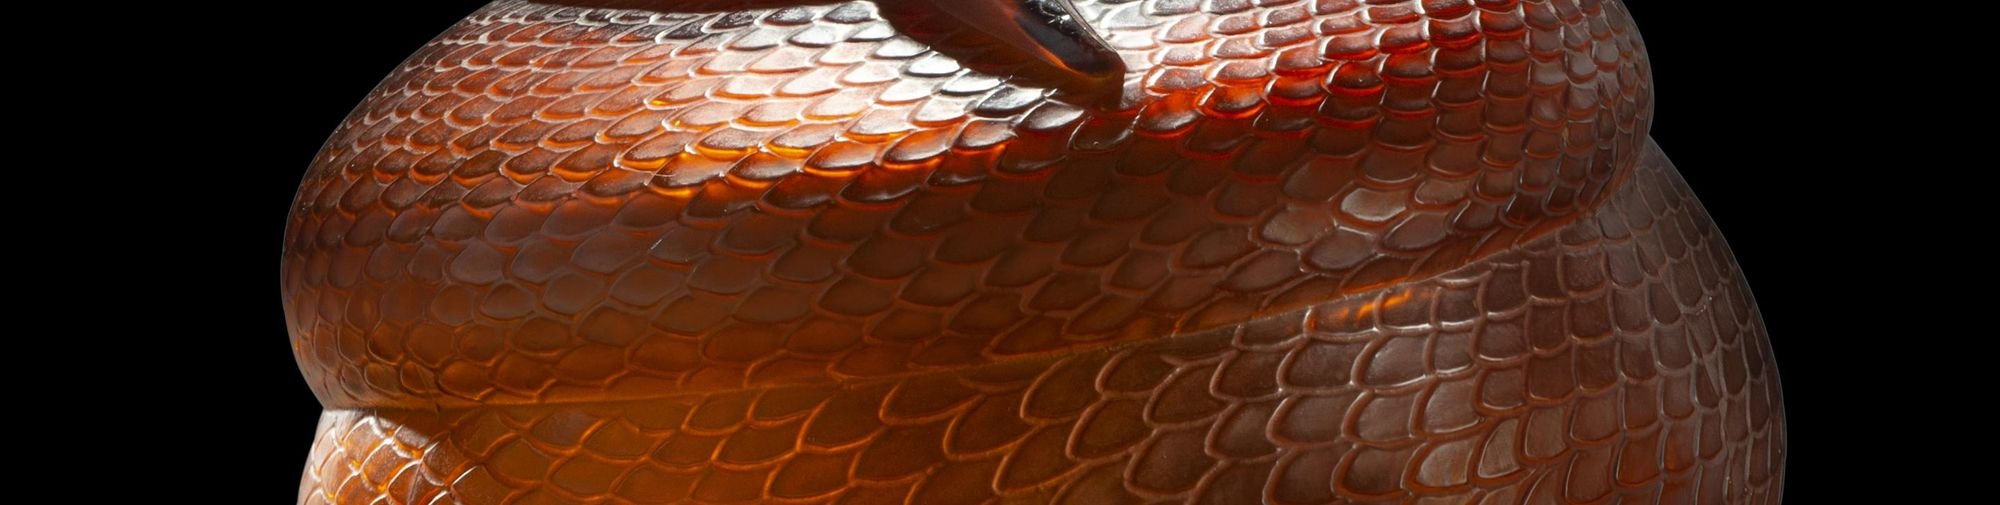 Vase Serpent en verre rouge - le gros serpent dont on voit les écailles est enroulé autour d'un vase rond et a la gueule ouverte au niveau du col du vase